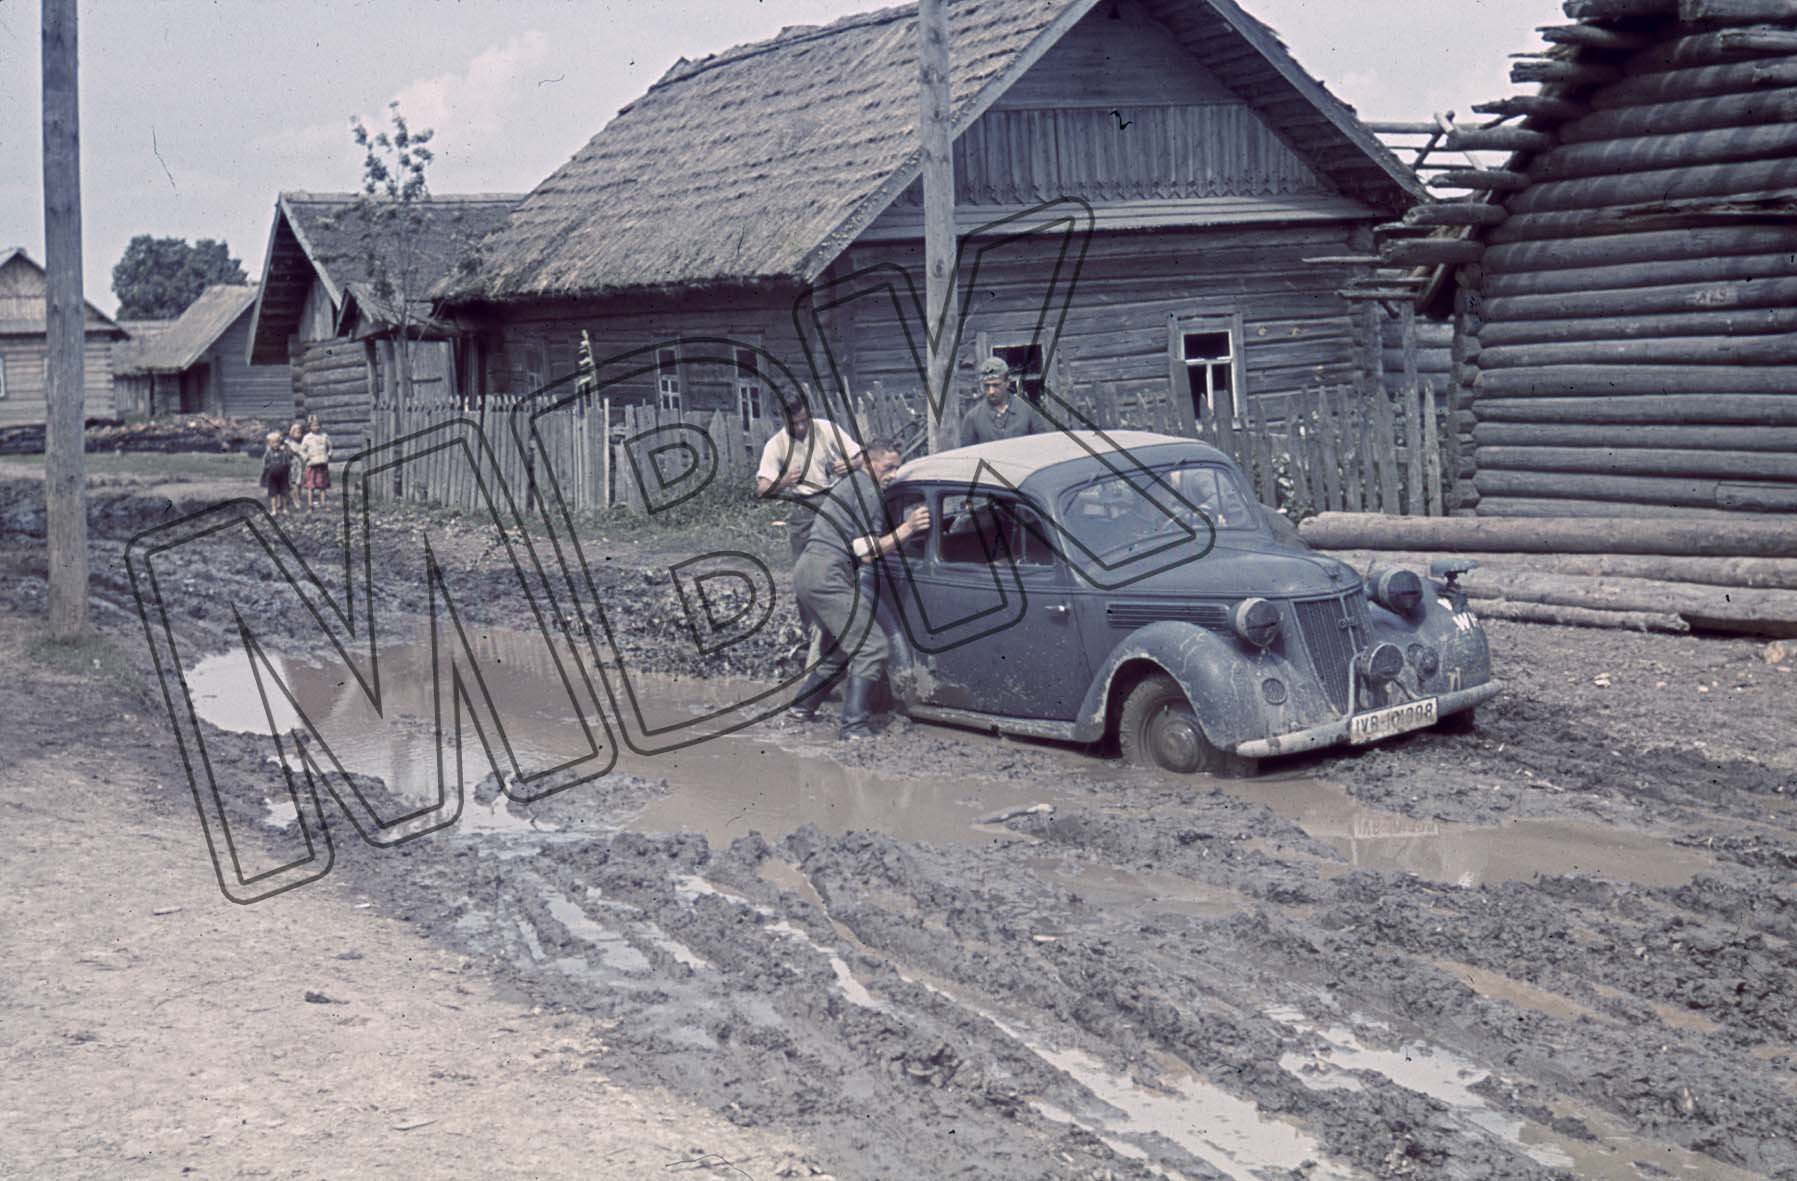 Fotografie: Im Schlamm feststeckendes Auto, bei Orscha, August 1941 (Museum Berlin-Karlshorst RR-P)